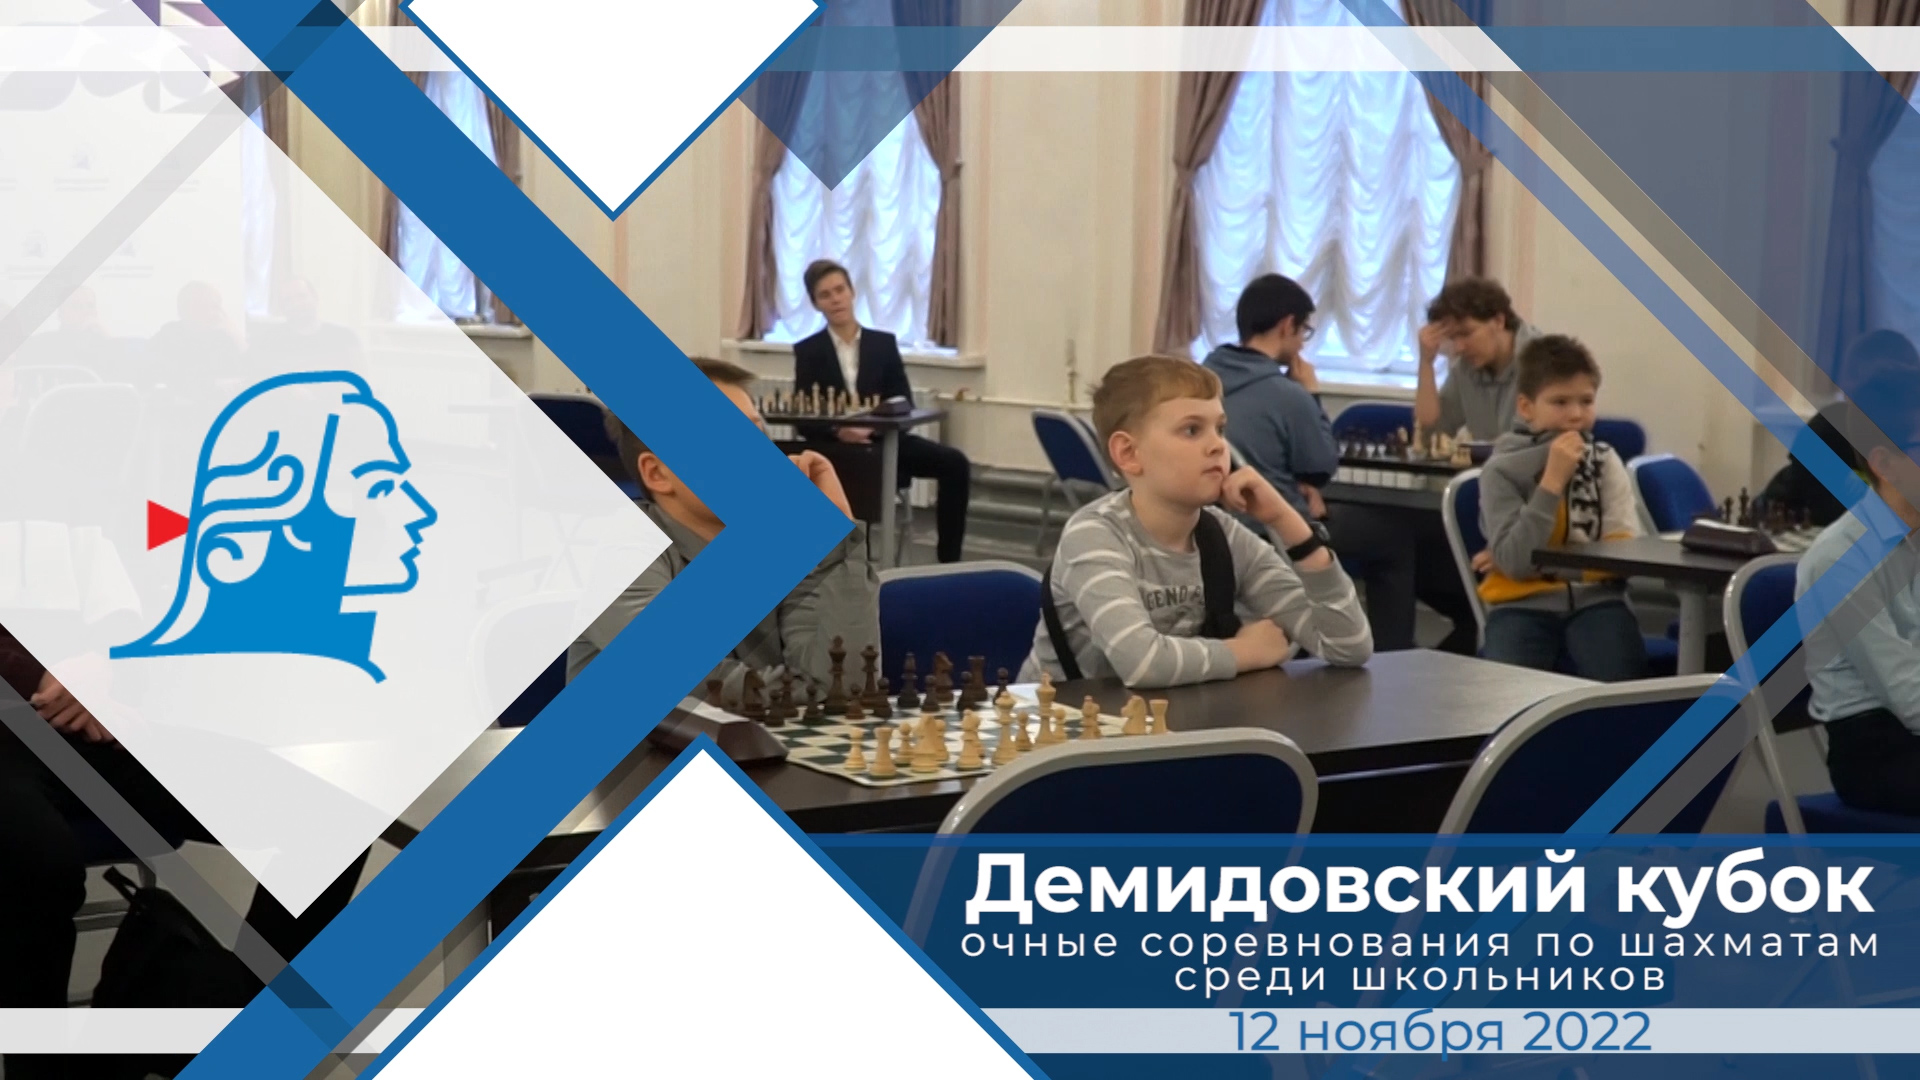 Демидовский кубок – очные соревнования по шахматам среди школьников